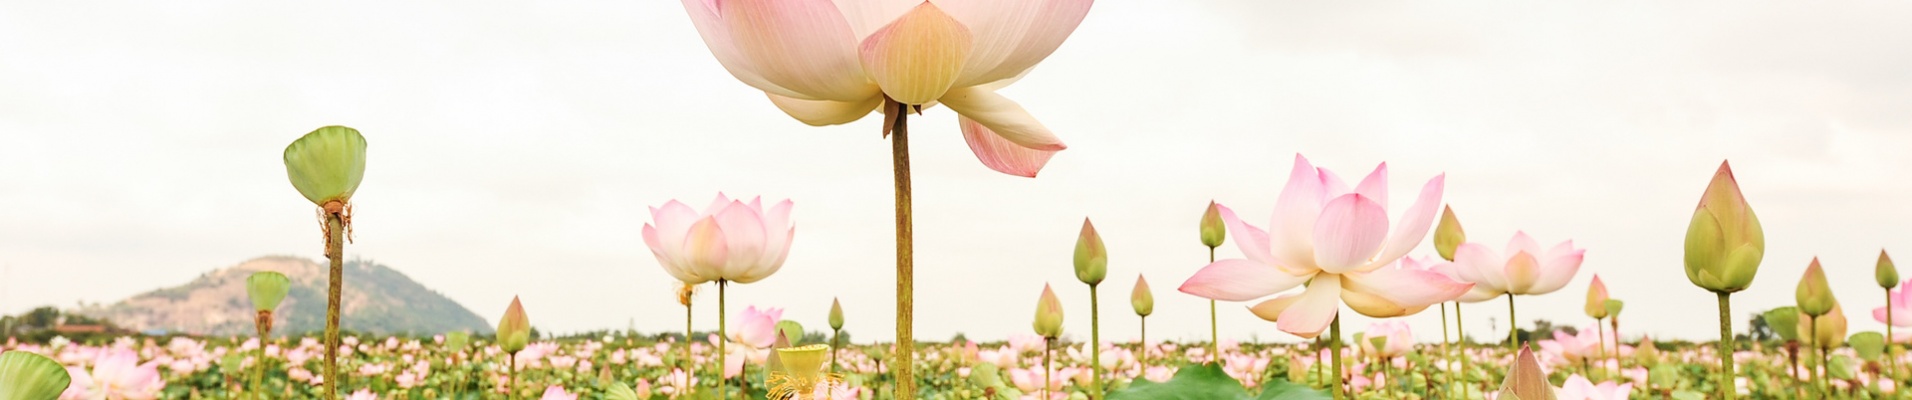 Ferme lotus battambang